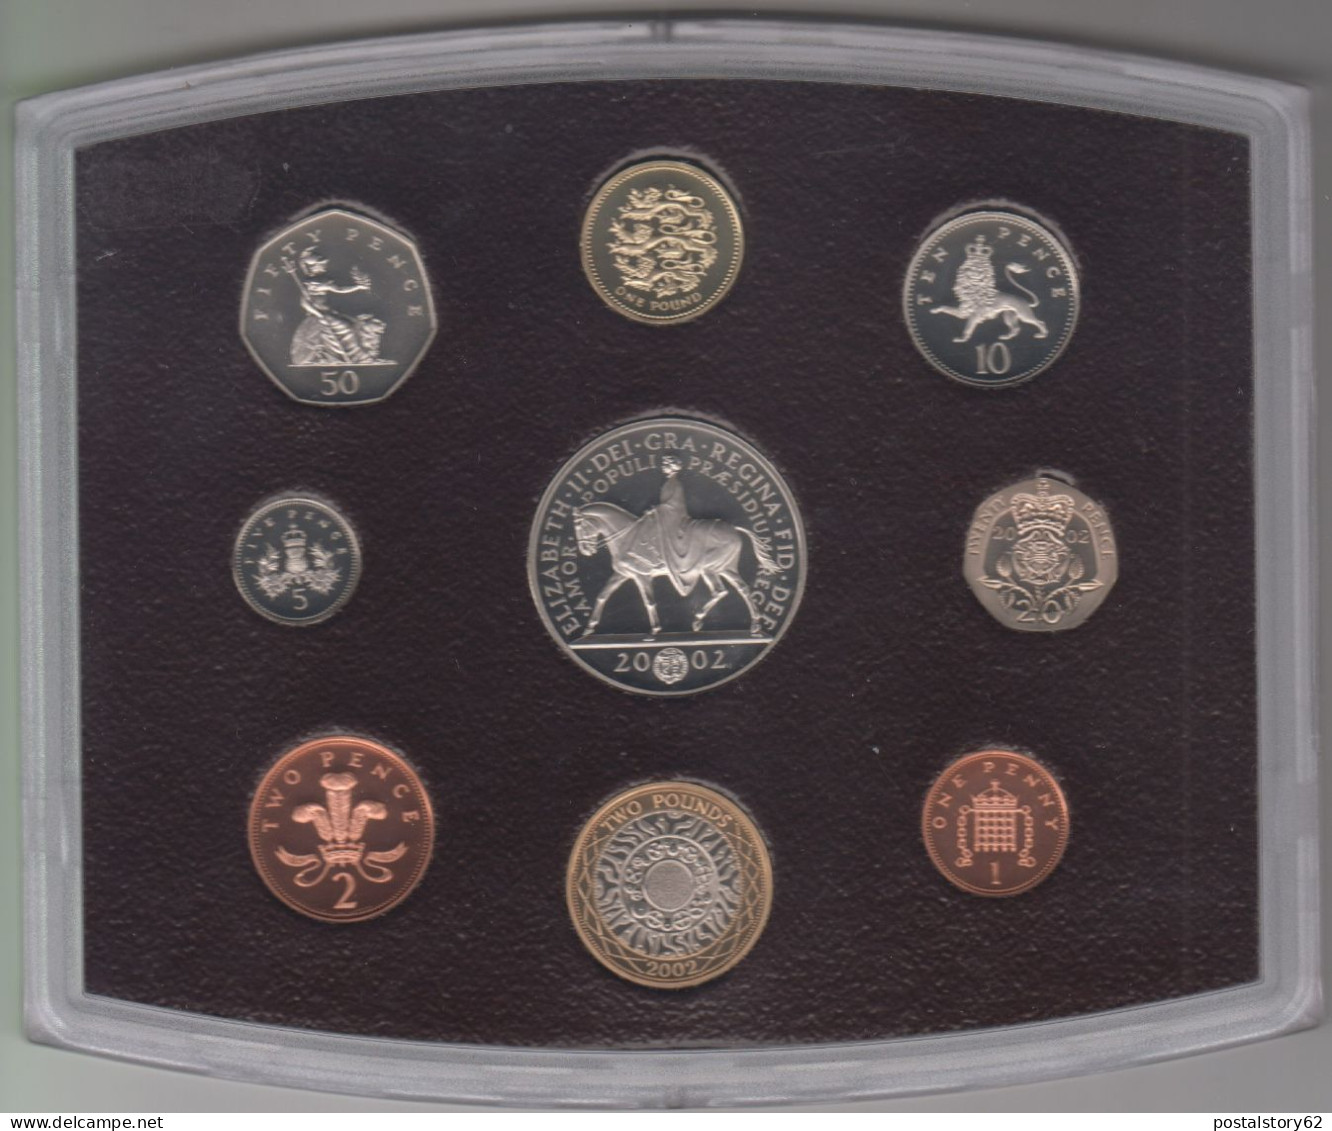 Gran Bretagna, United Kingdom Proof Collection - Serie Completa Ufficiale In Confezione Integra 2002 - Maundy Sets & Commemorative